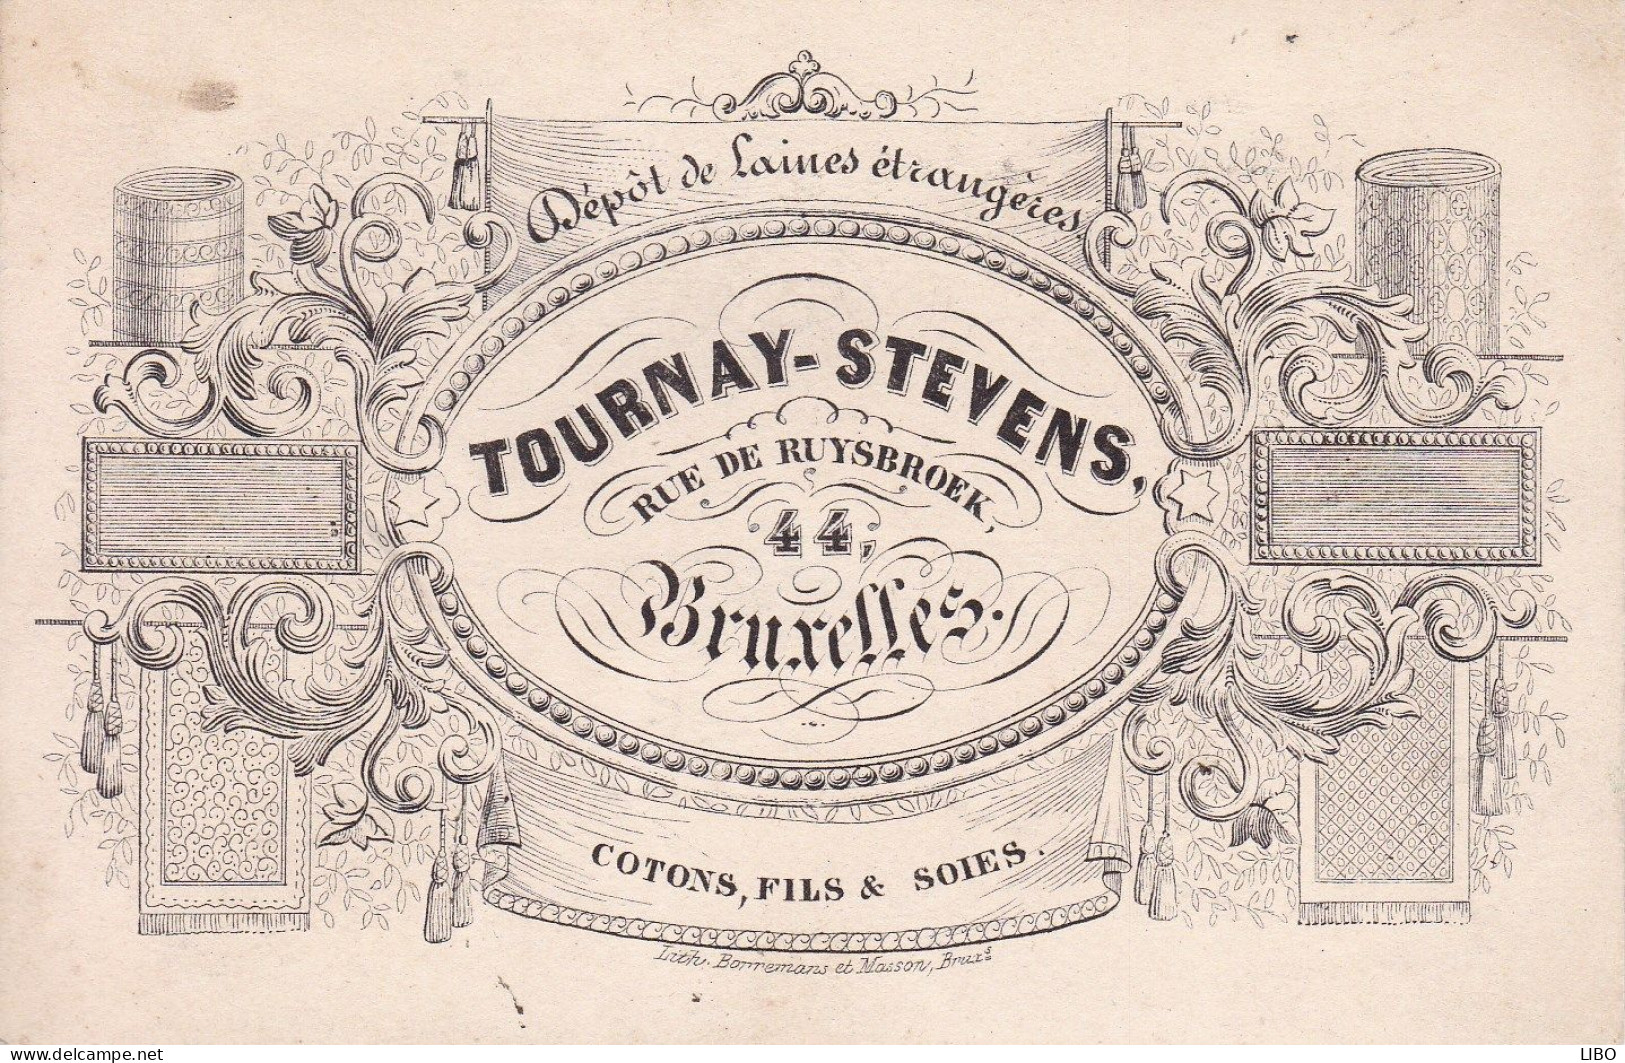 BRUXELLES Laines TOURNAY-STEVENS Rue De Ruysbroek Cotons Fils Et Soies Carte De Visite Format Carte Postale C. 1860 - Visiting Cards